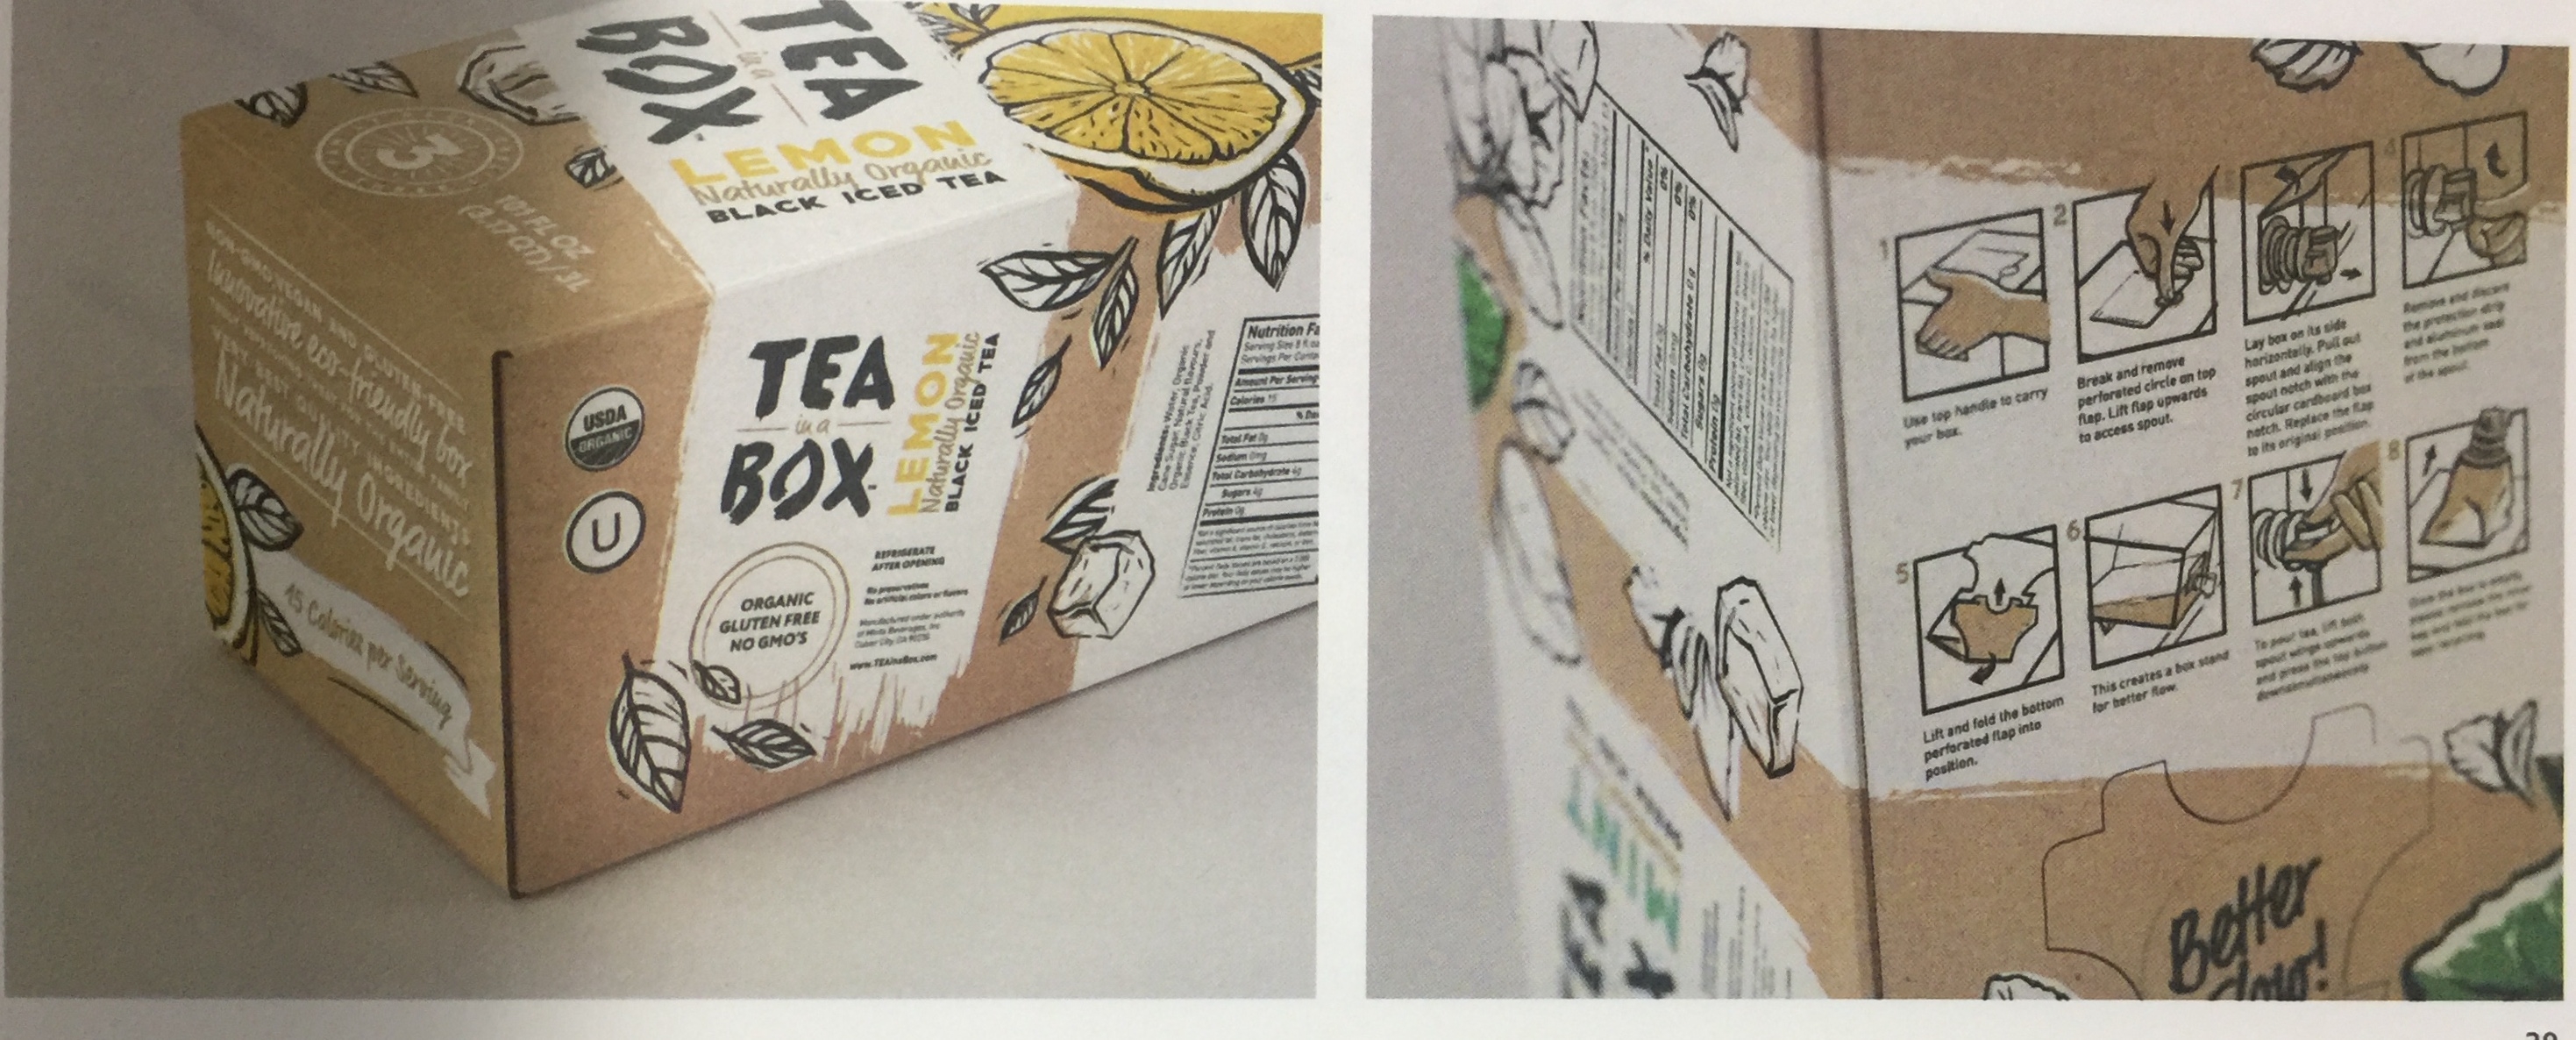 果味红茶系列饮料包装设计